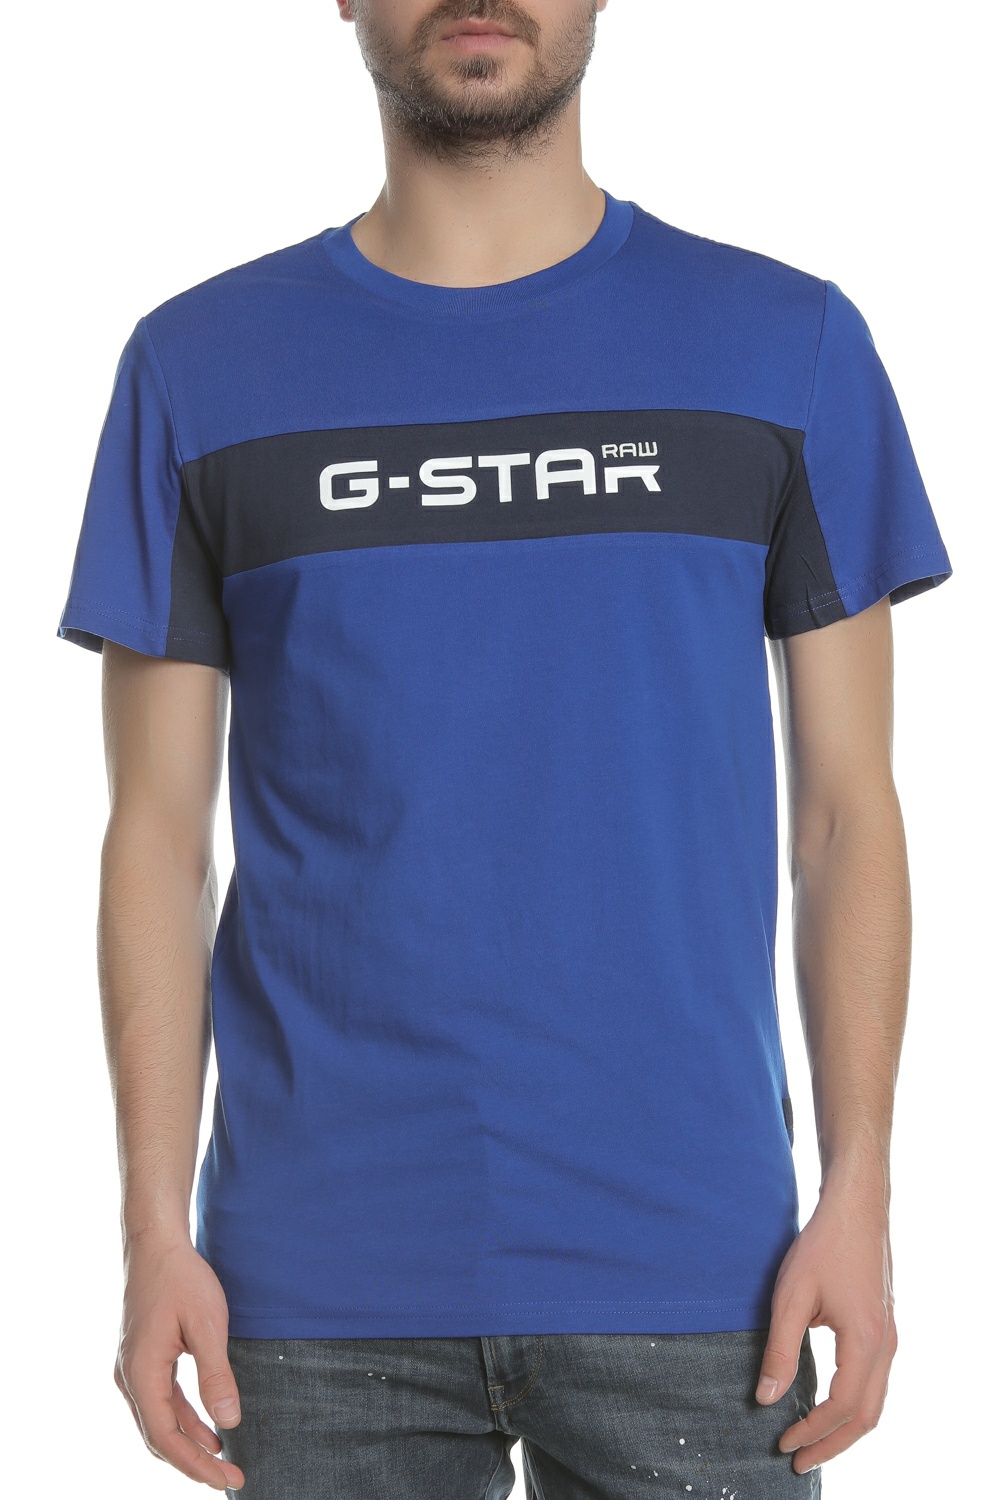 Ανδρικά/Ρούχα/Μπλούζες/Κοντομάνικες G-STAR - Ανδρική μπλούζα G-STAR μπλε